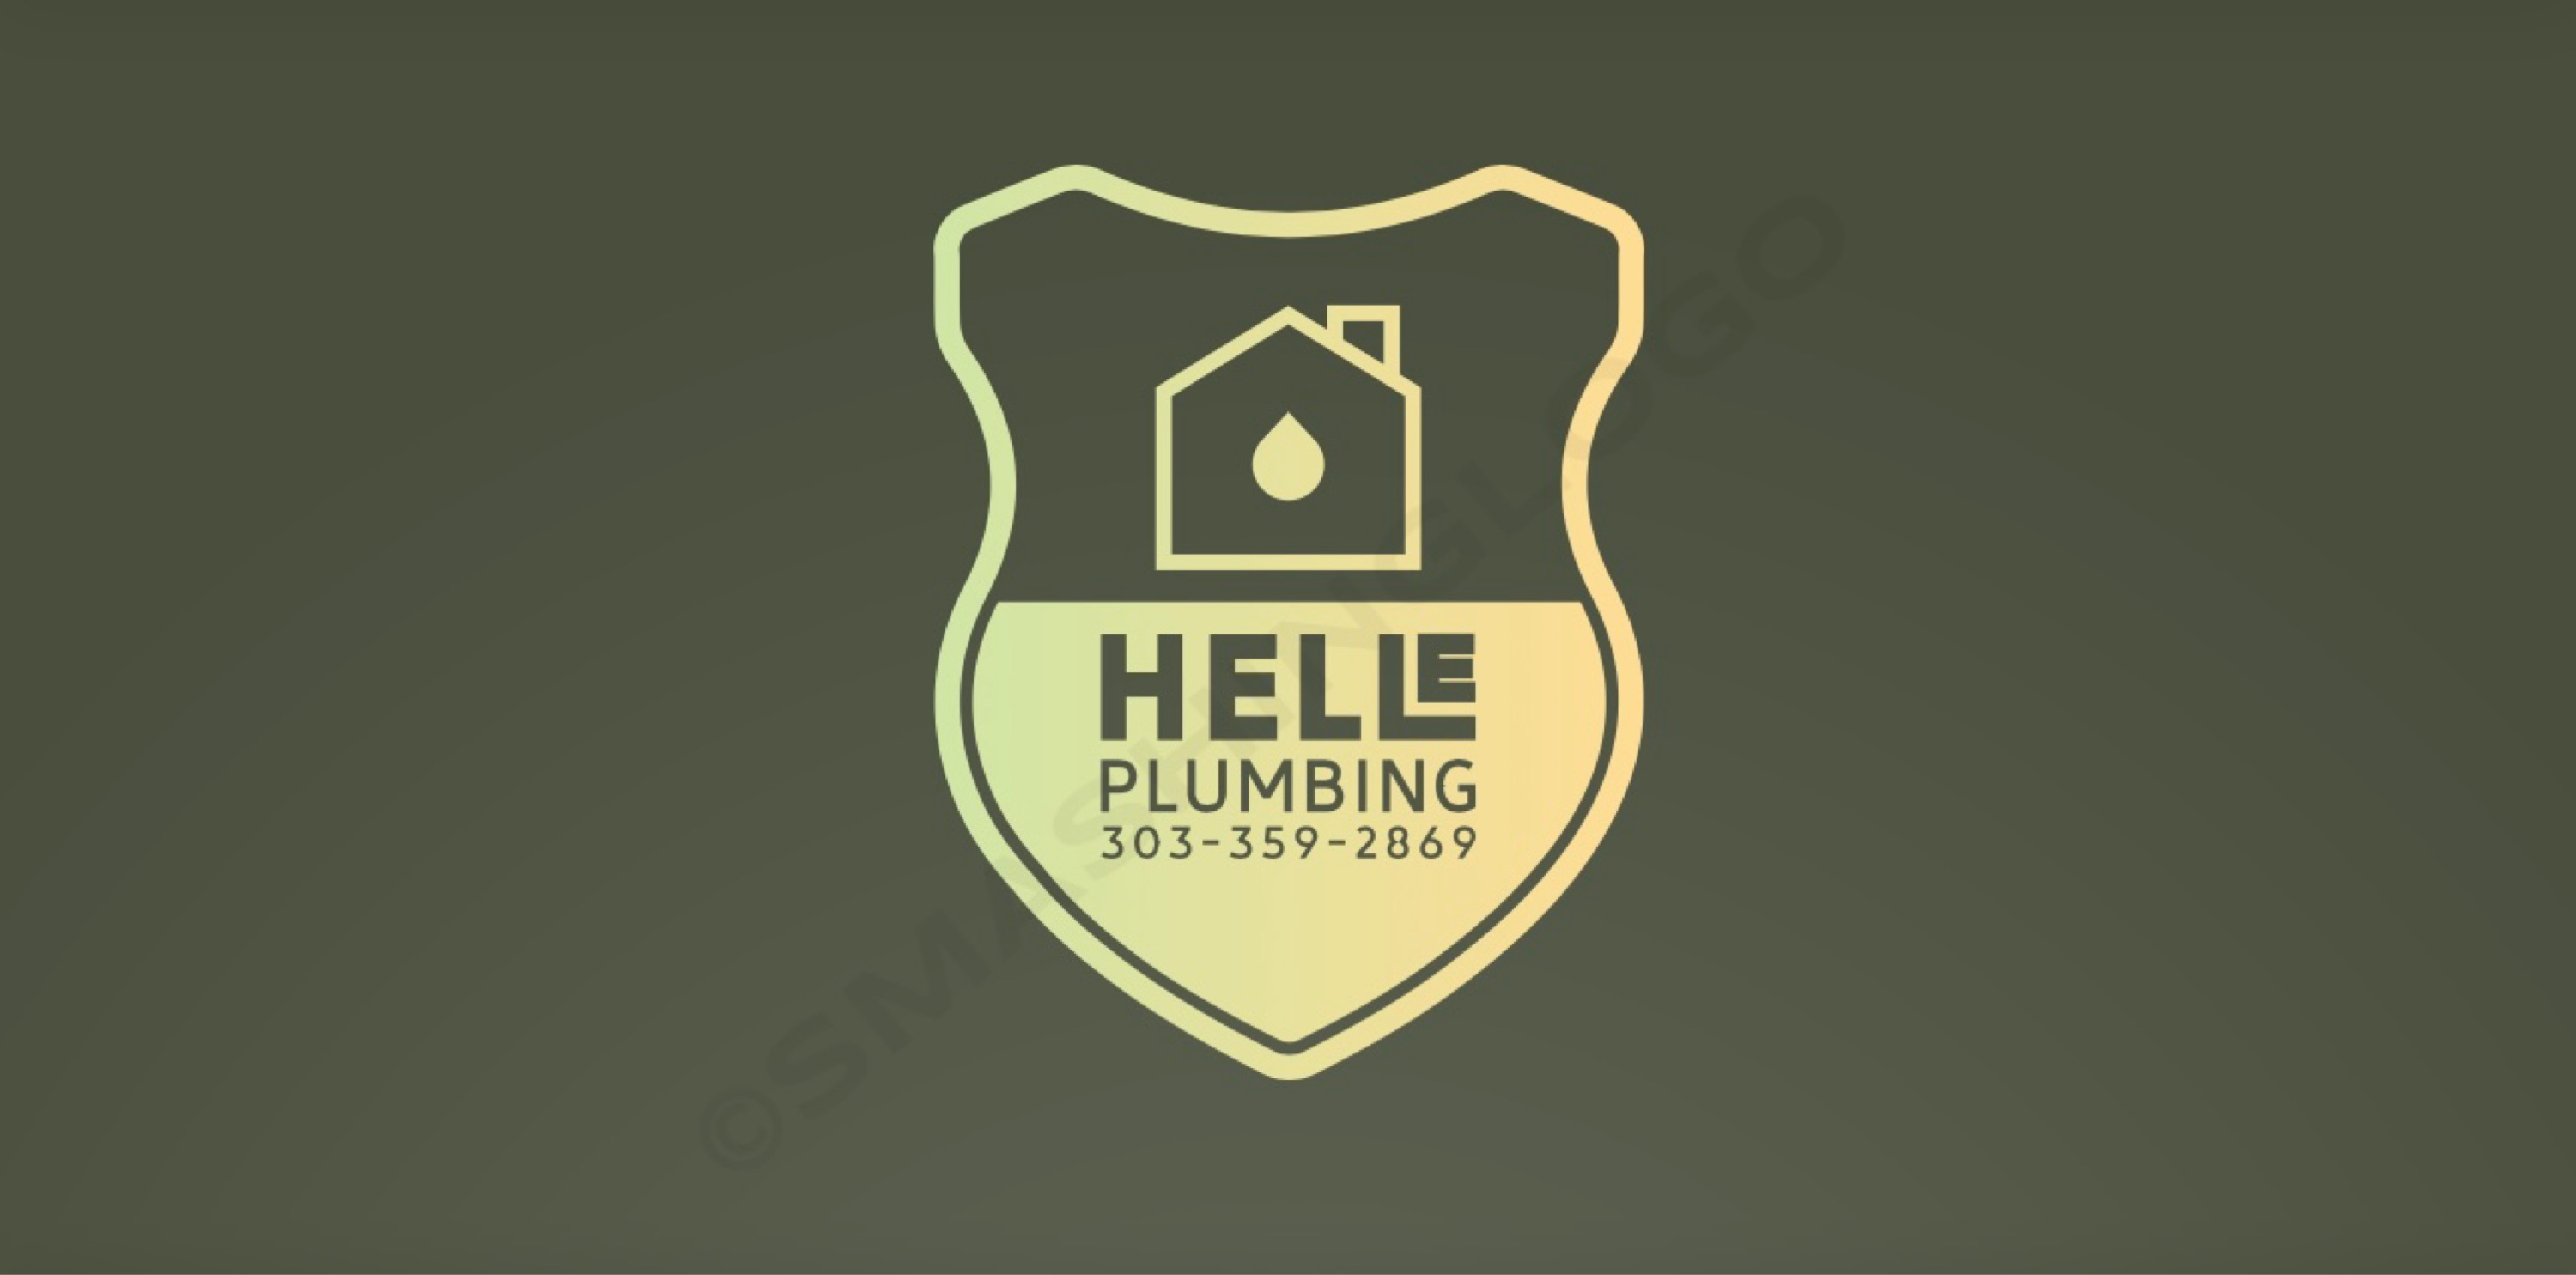 Helle Plumbing Logo